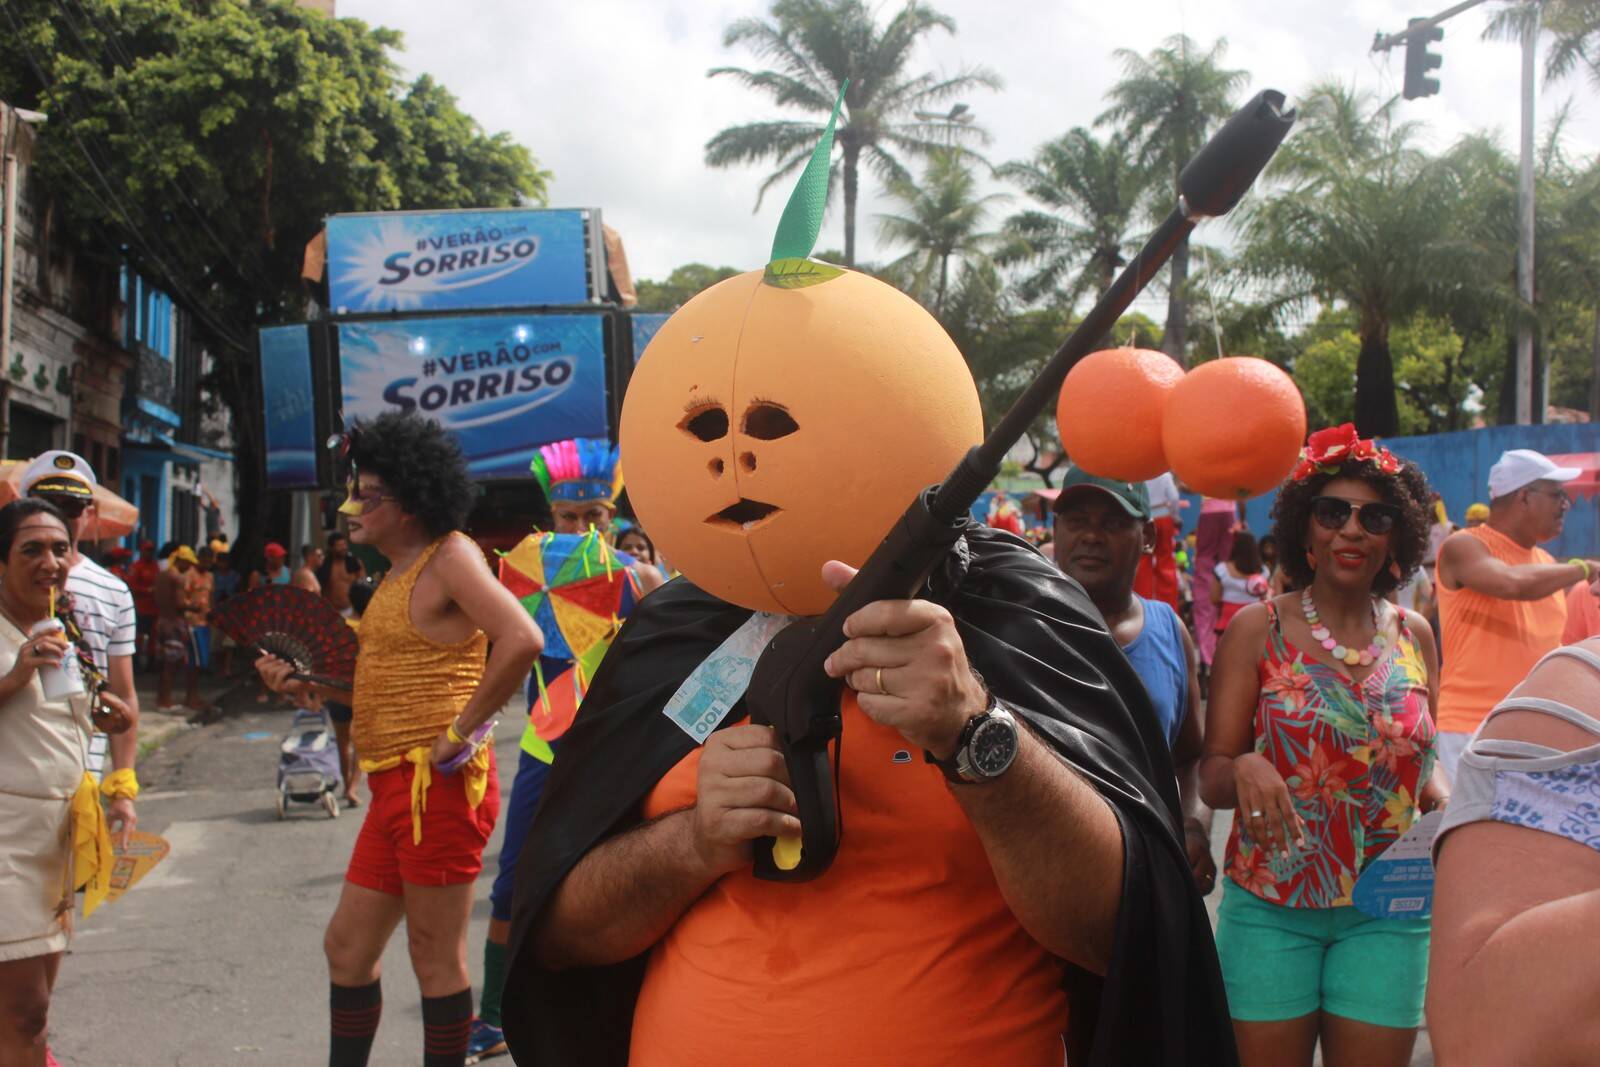 fantasias de carnaval fazem críticas políticas. Foto: Reprodução / Instagram / Twitter